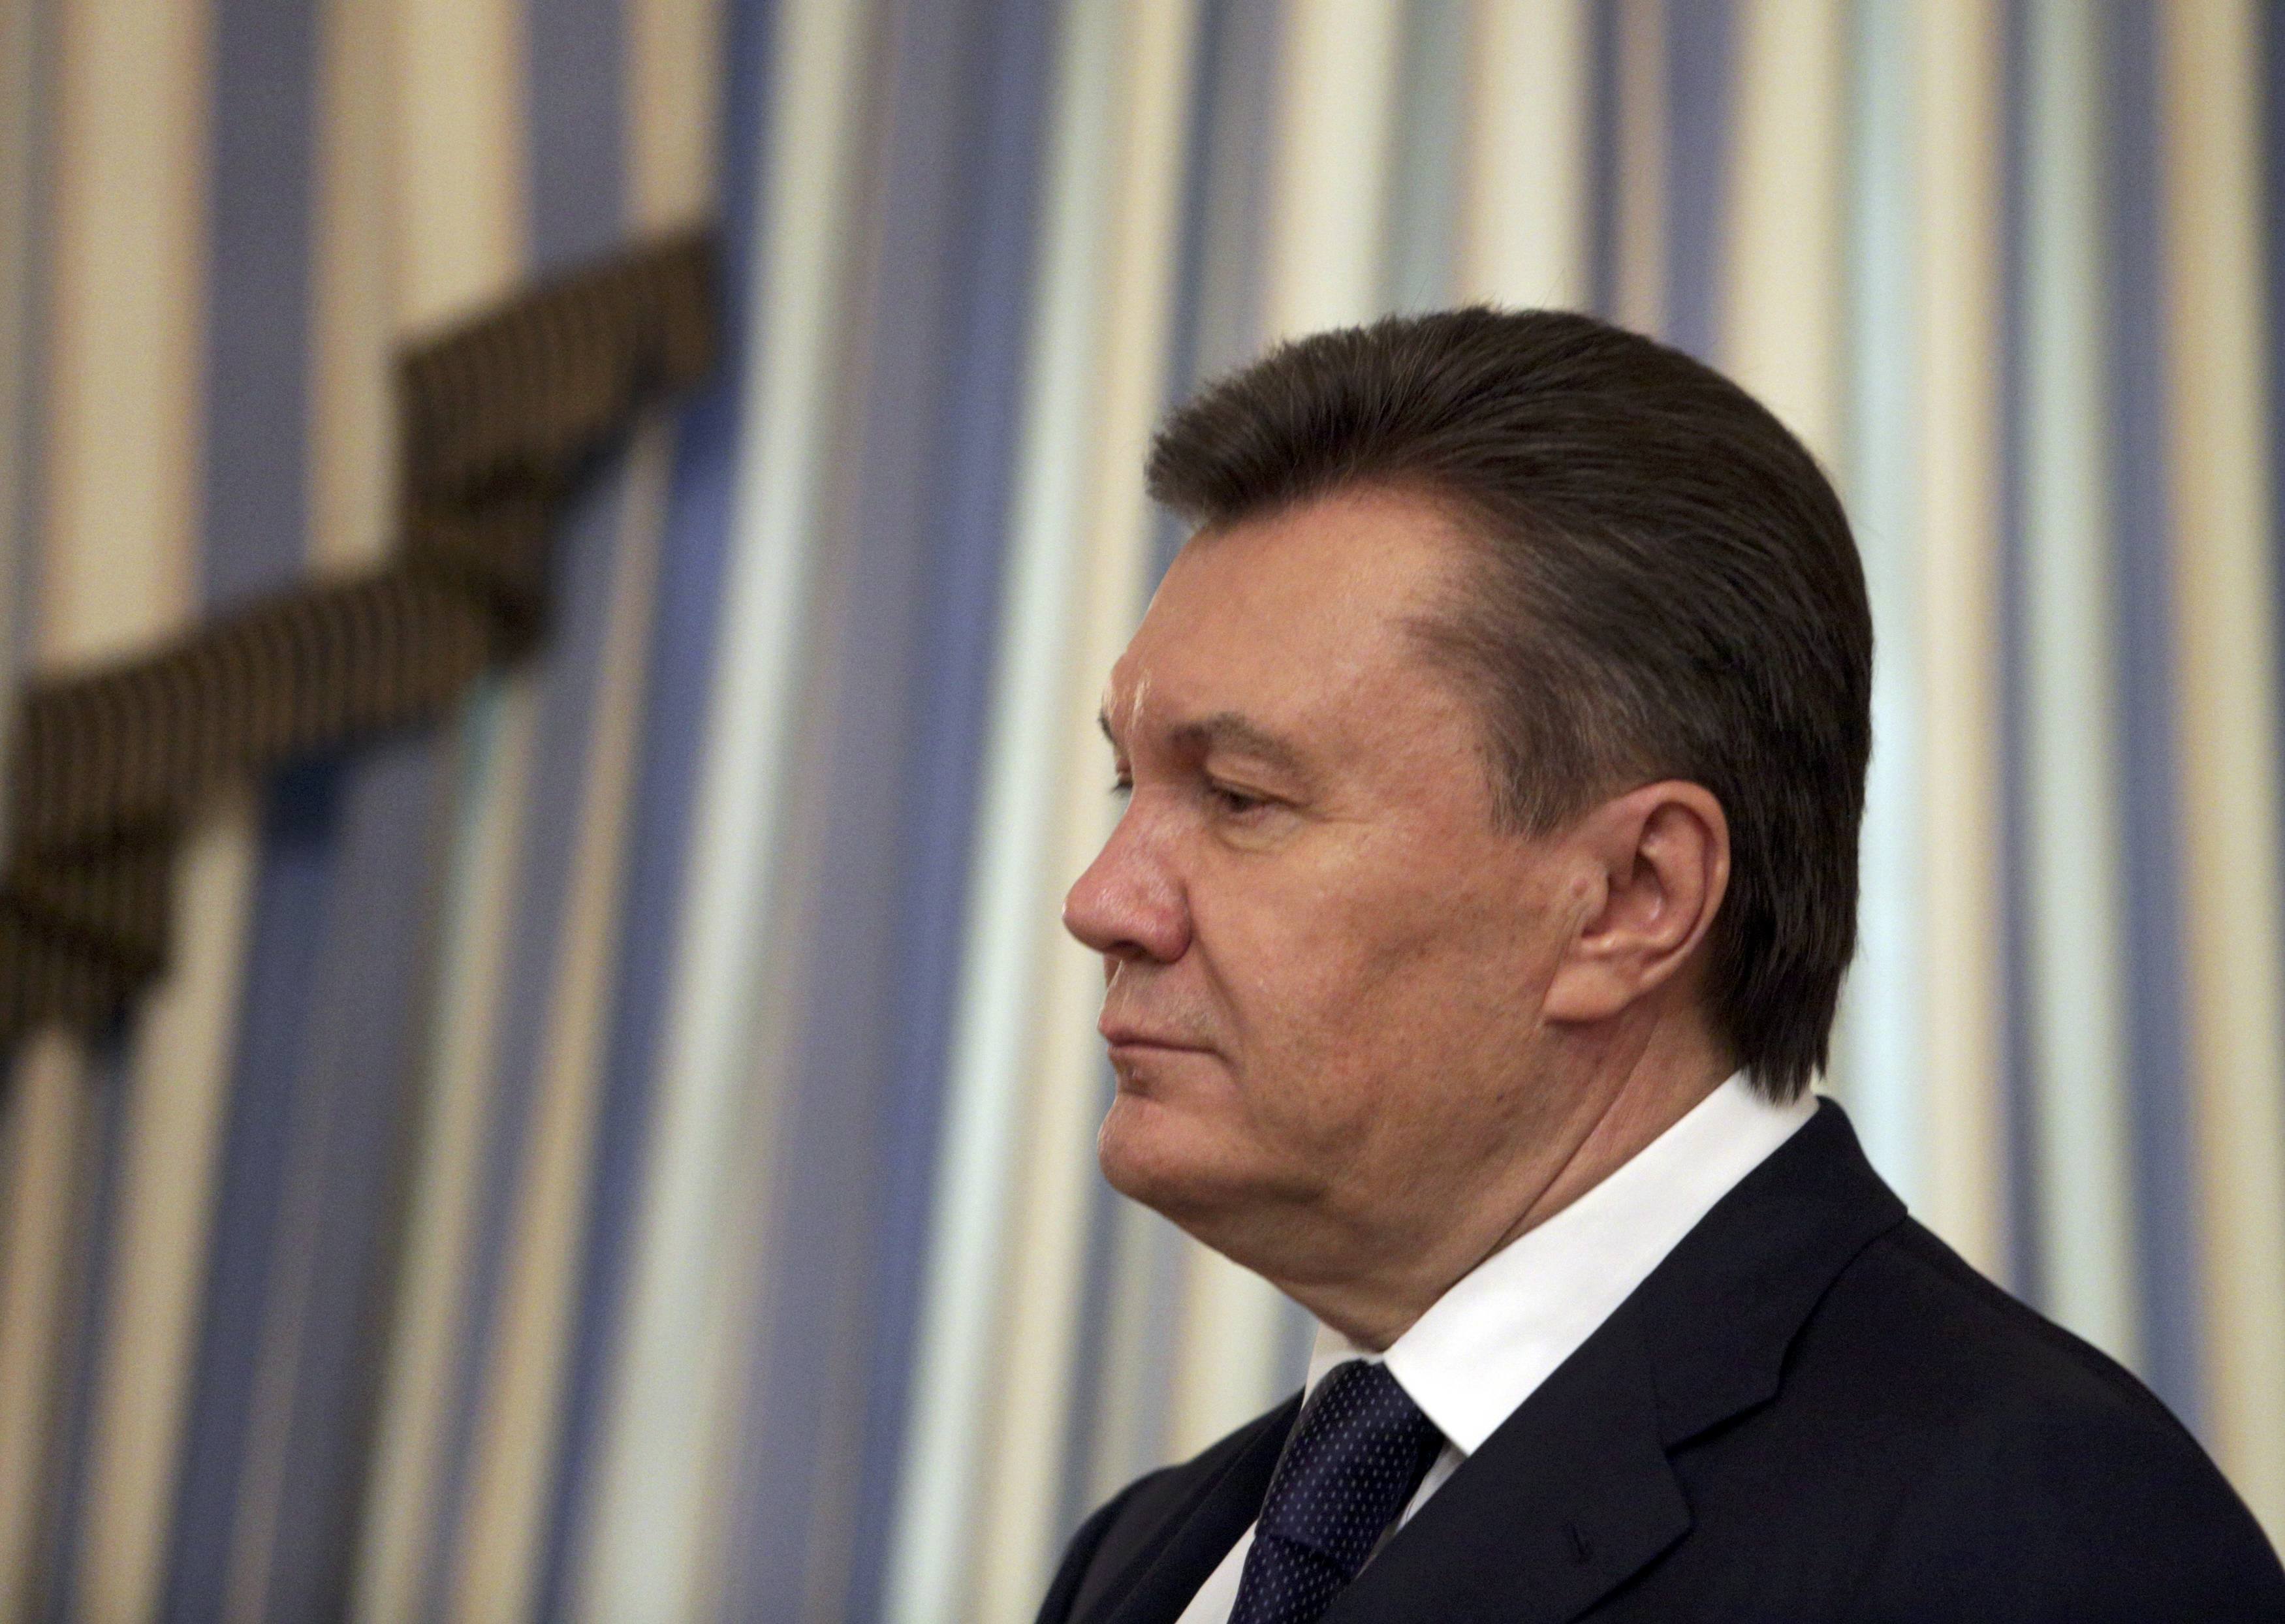 Διάγγελμα διχασμού και παραλήρημα από τον Γιανουκόβιτς: “Δεν παραιτούμαι! Έγινε πραξικόπημα” – Τον κήρυξε έκπτωτο η Βουλή – Εκλογές τον Μάιο